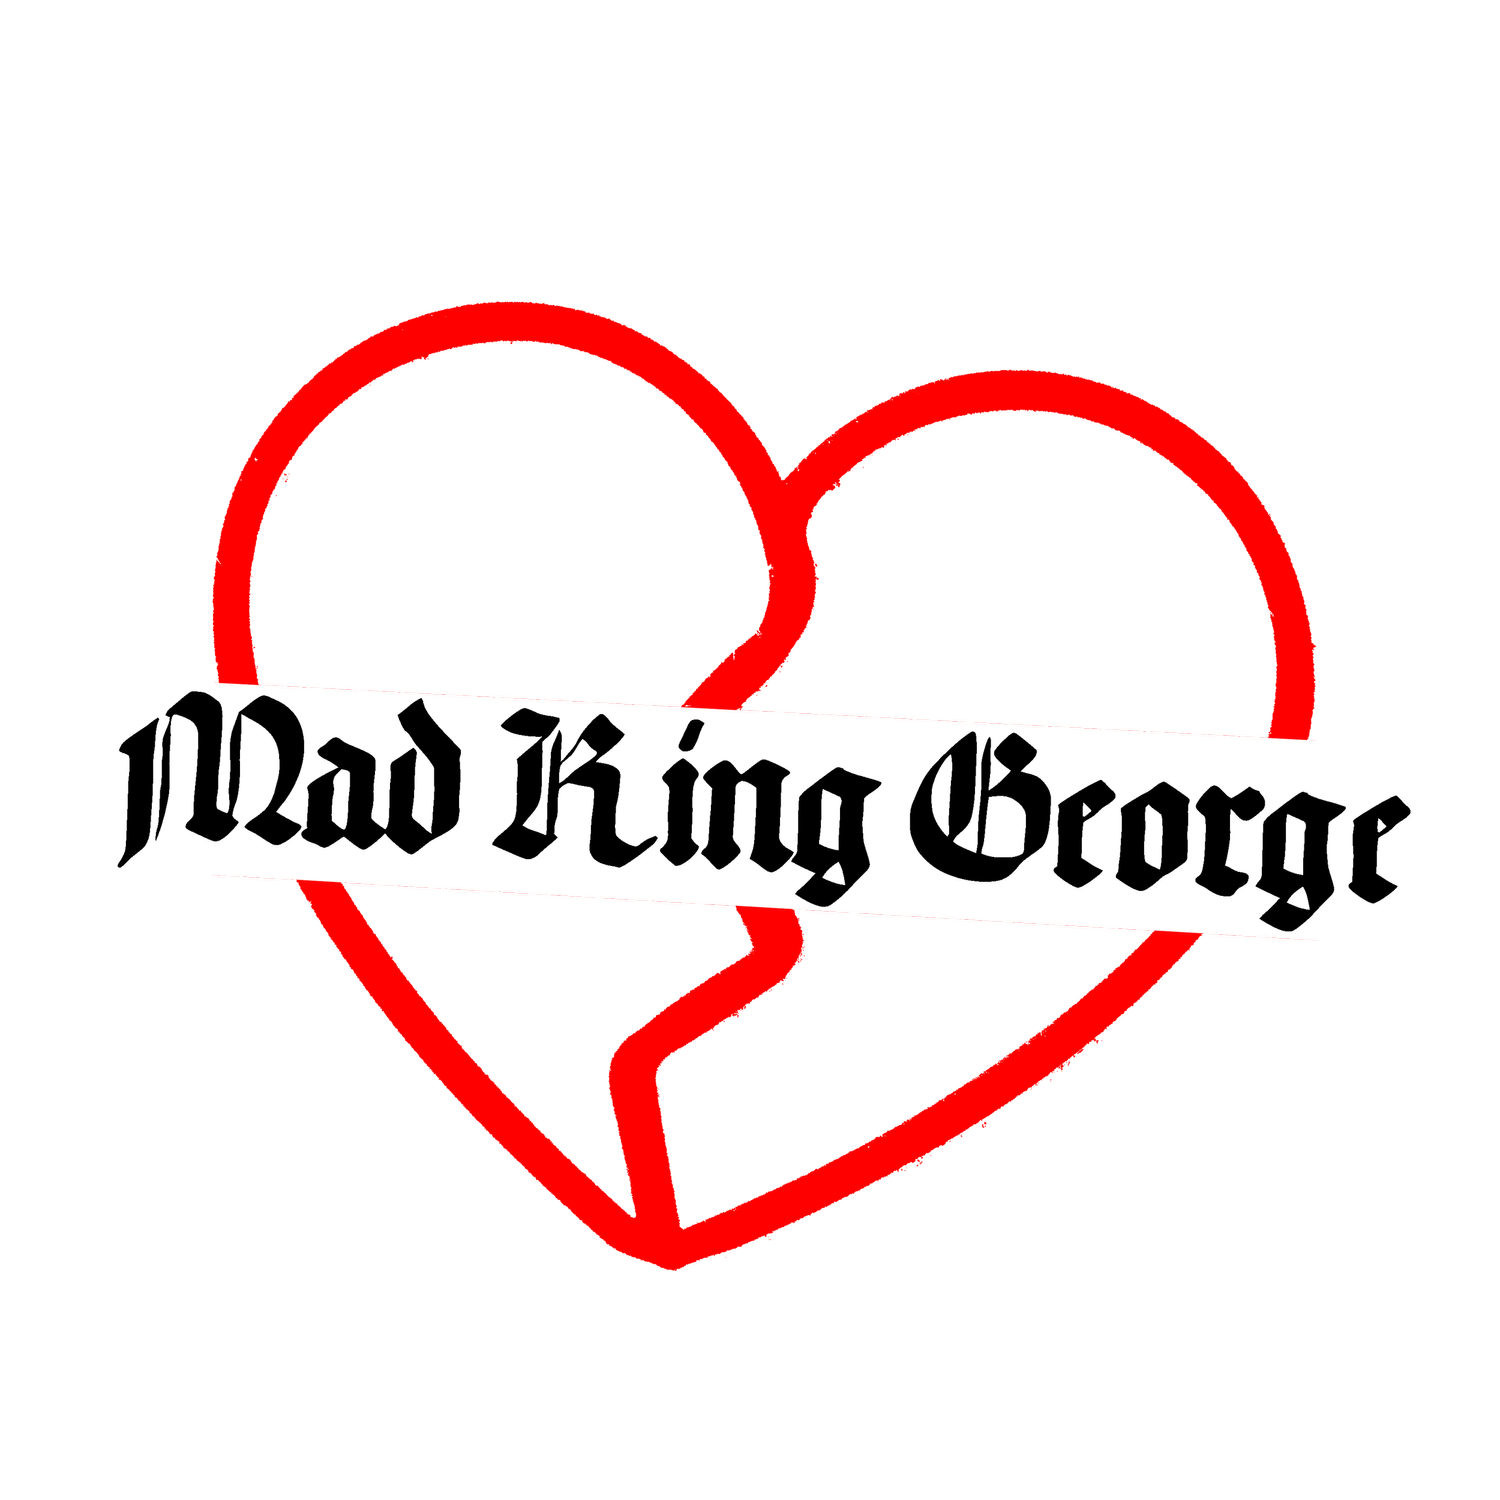 Mad King George